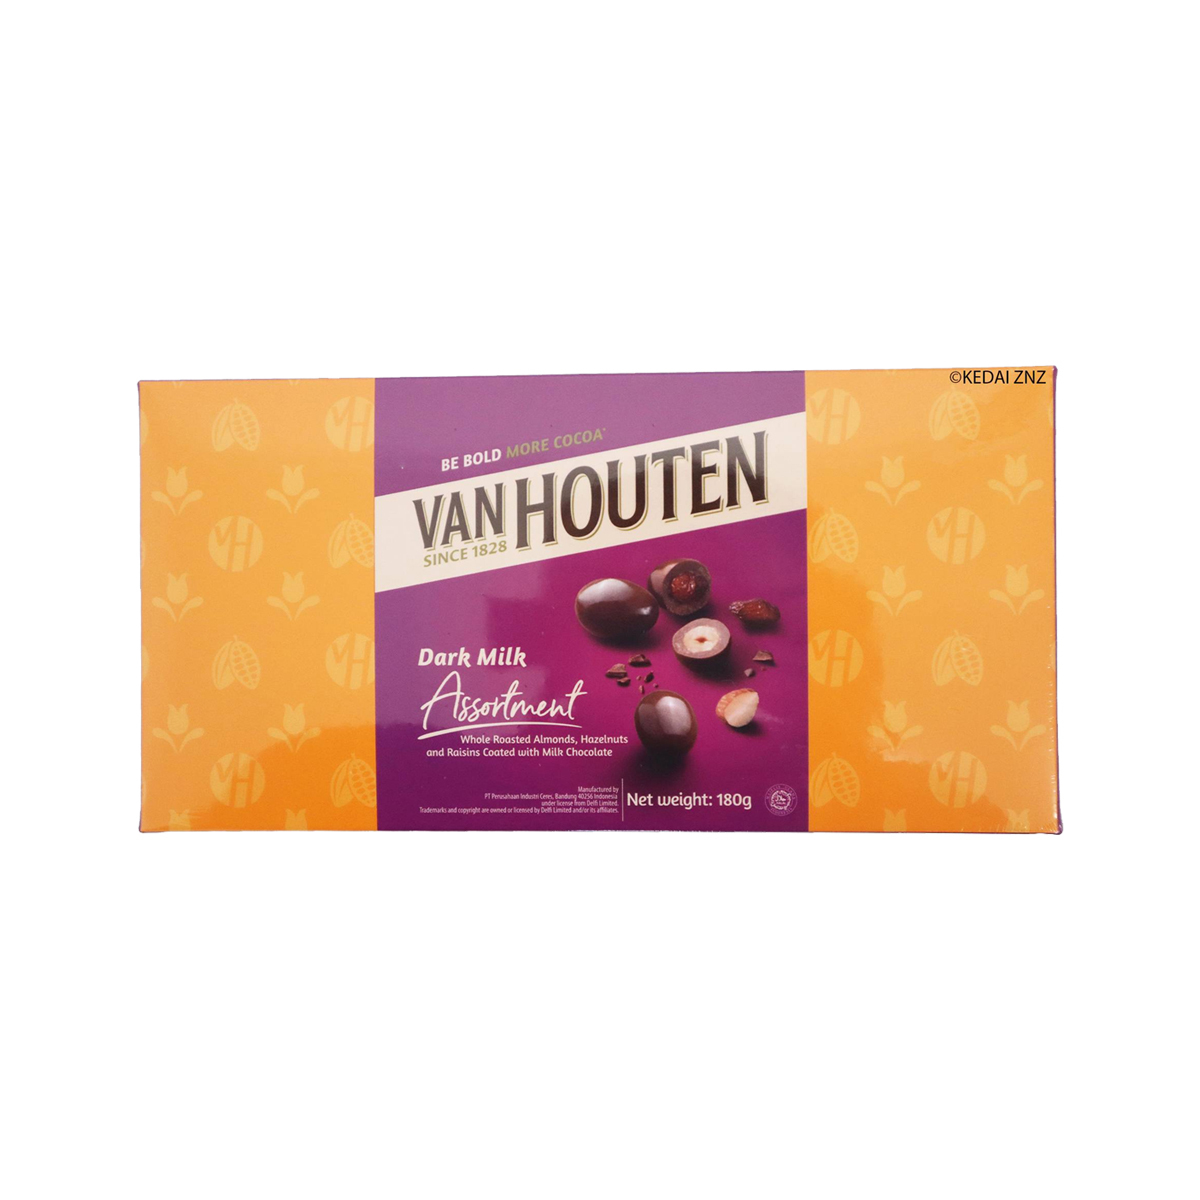 Van Houten Releases NEW Dark Milk Chocolate That Comes With More